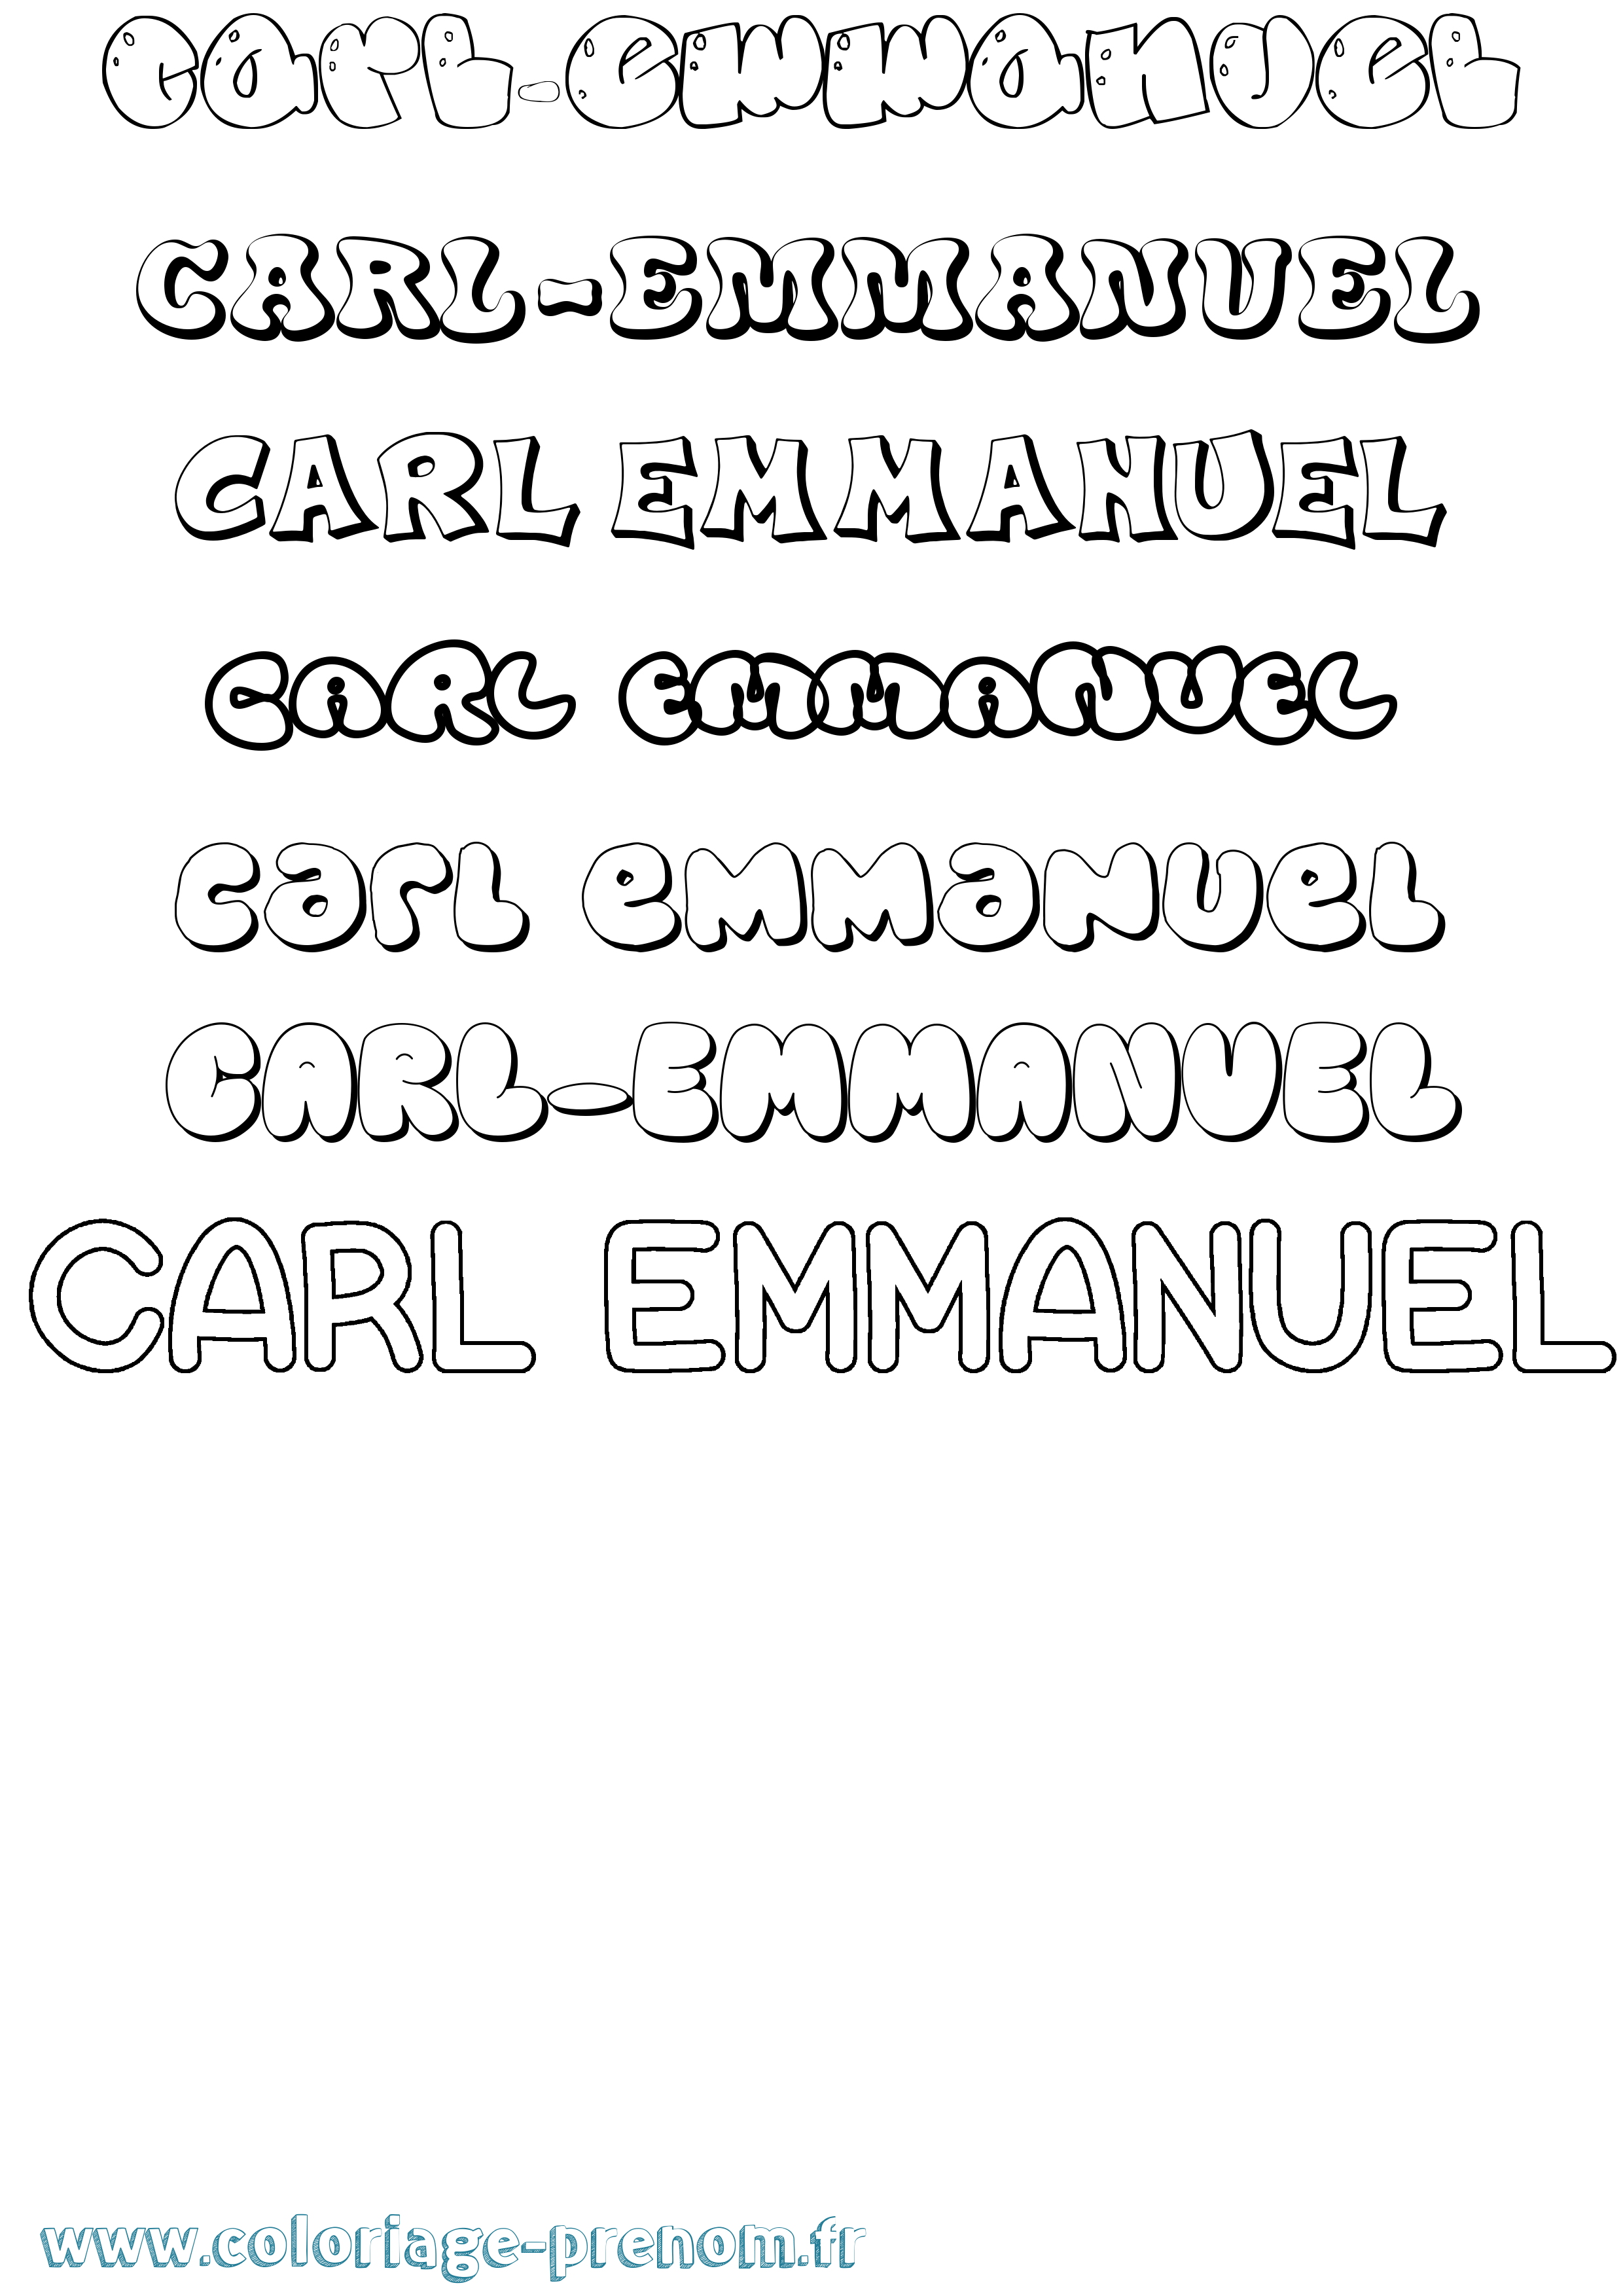 Coloriage prénom Carl-Emmanuel Bubble